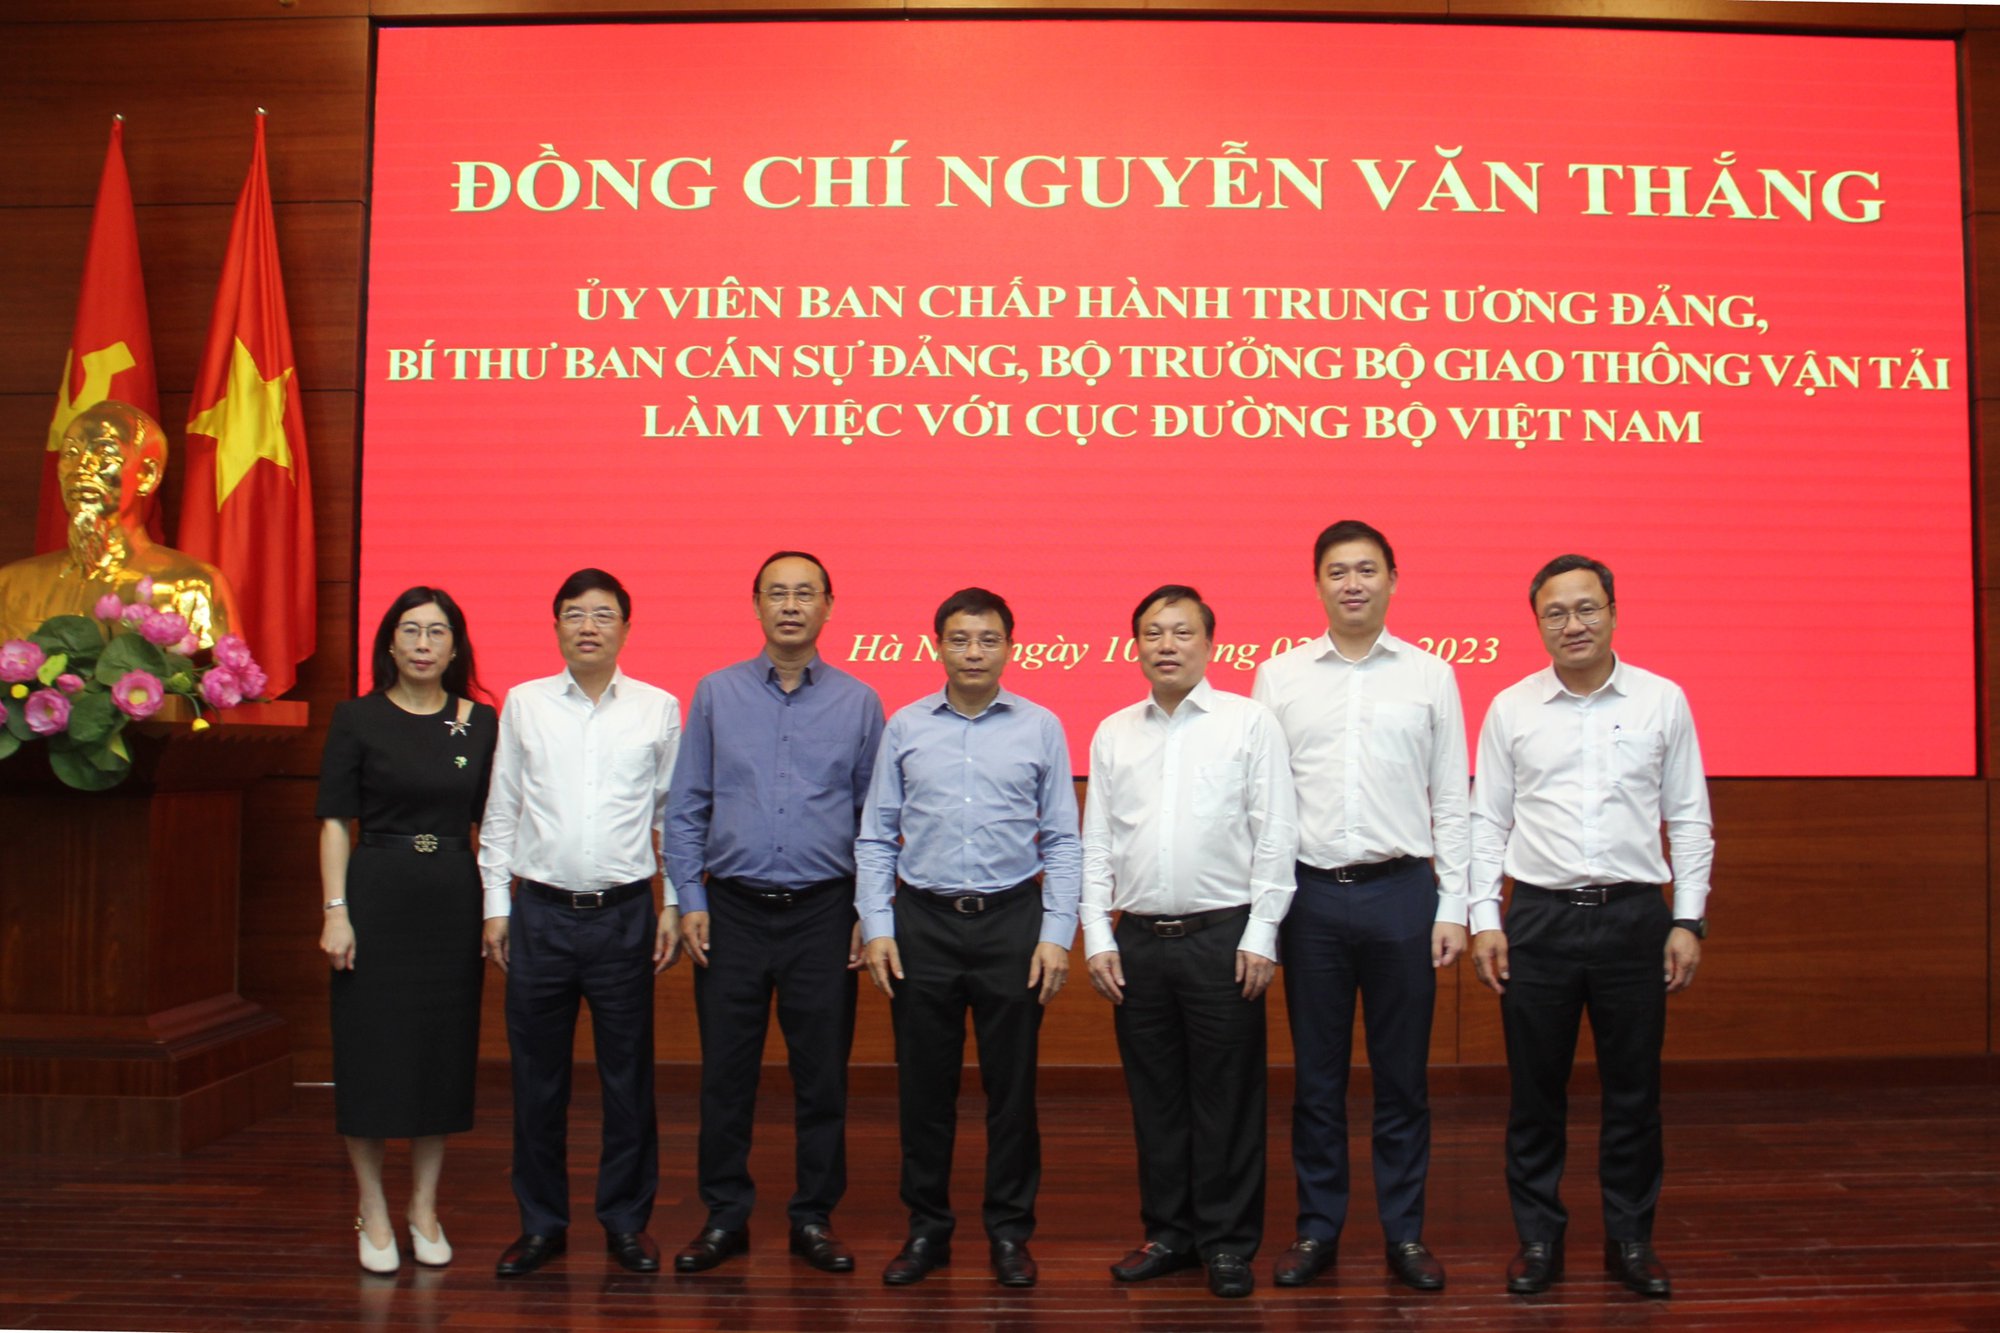 Bộ trưởng Nguyễn Văn Thắng làm việc với Cục Đường bộ Việt Nam - Ảnh 2.